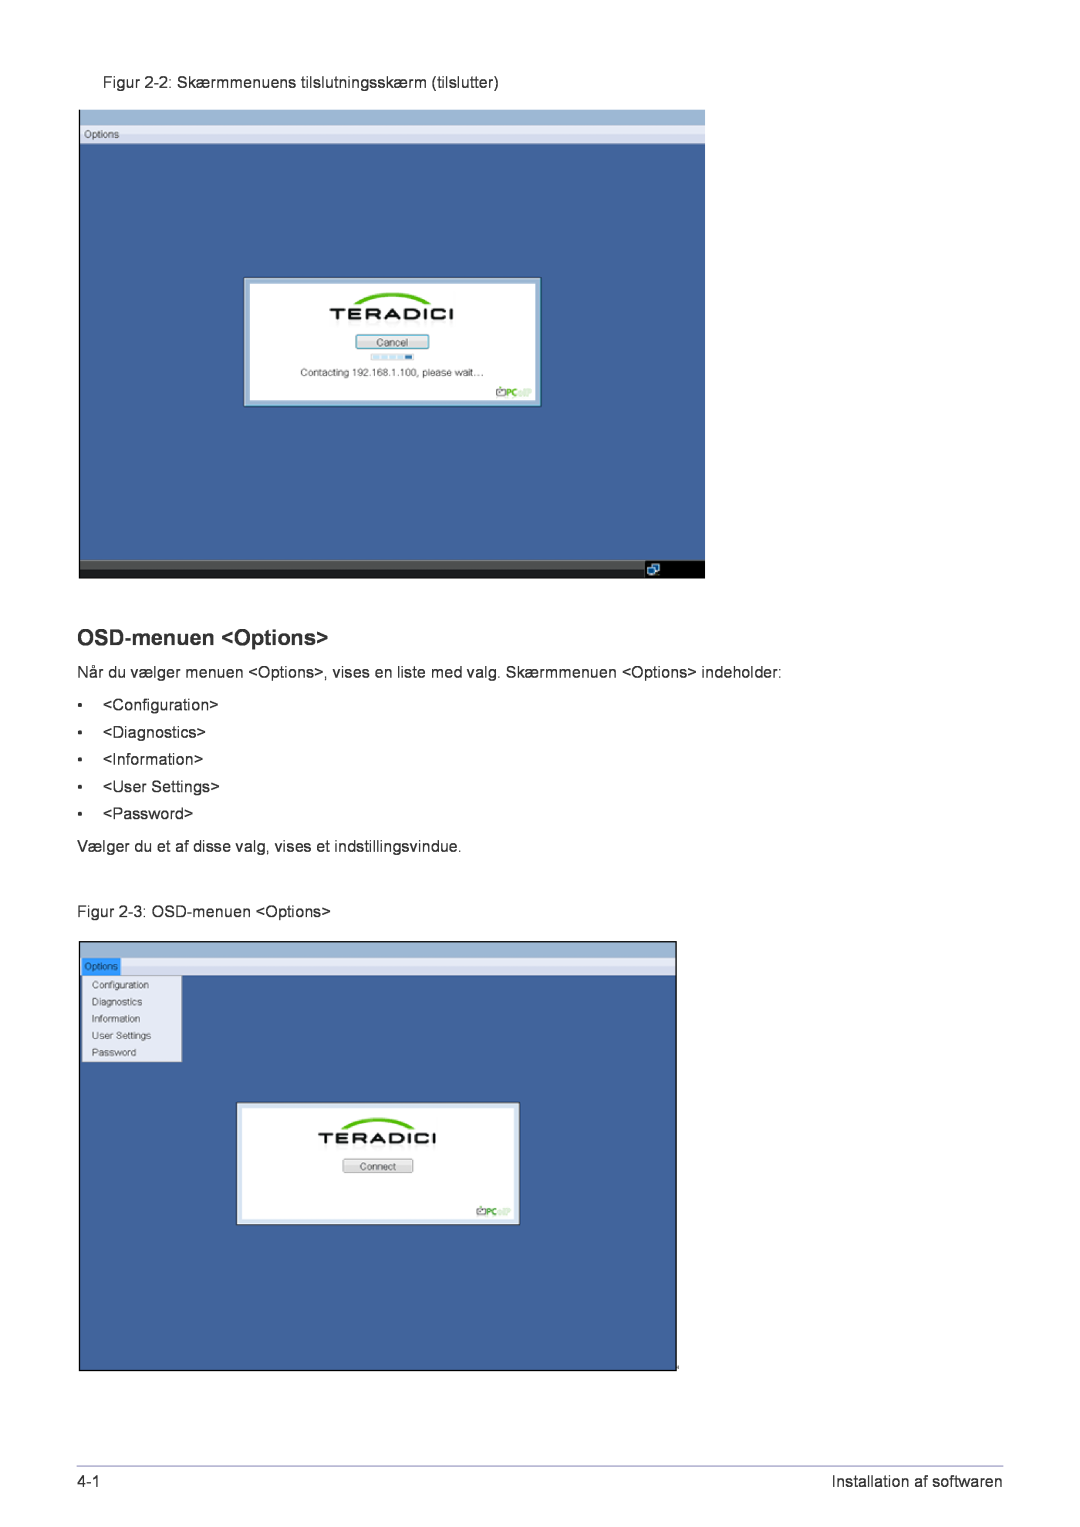 Samsung LF22NPBHBNP/EN OSD-menuen Options, Figur 2-2 Skærmmenuens tilslutningsskærm tilslutter, Installation af softwaren 